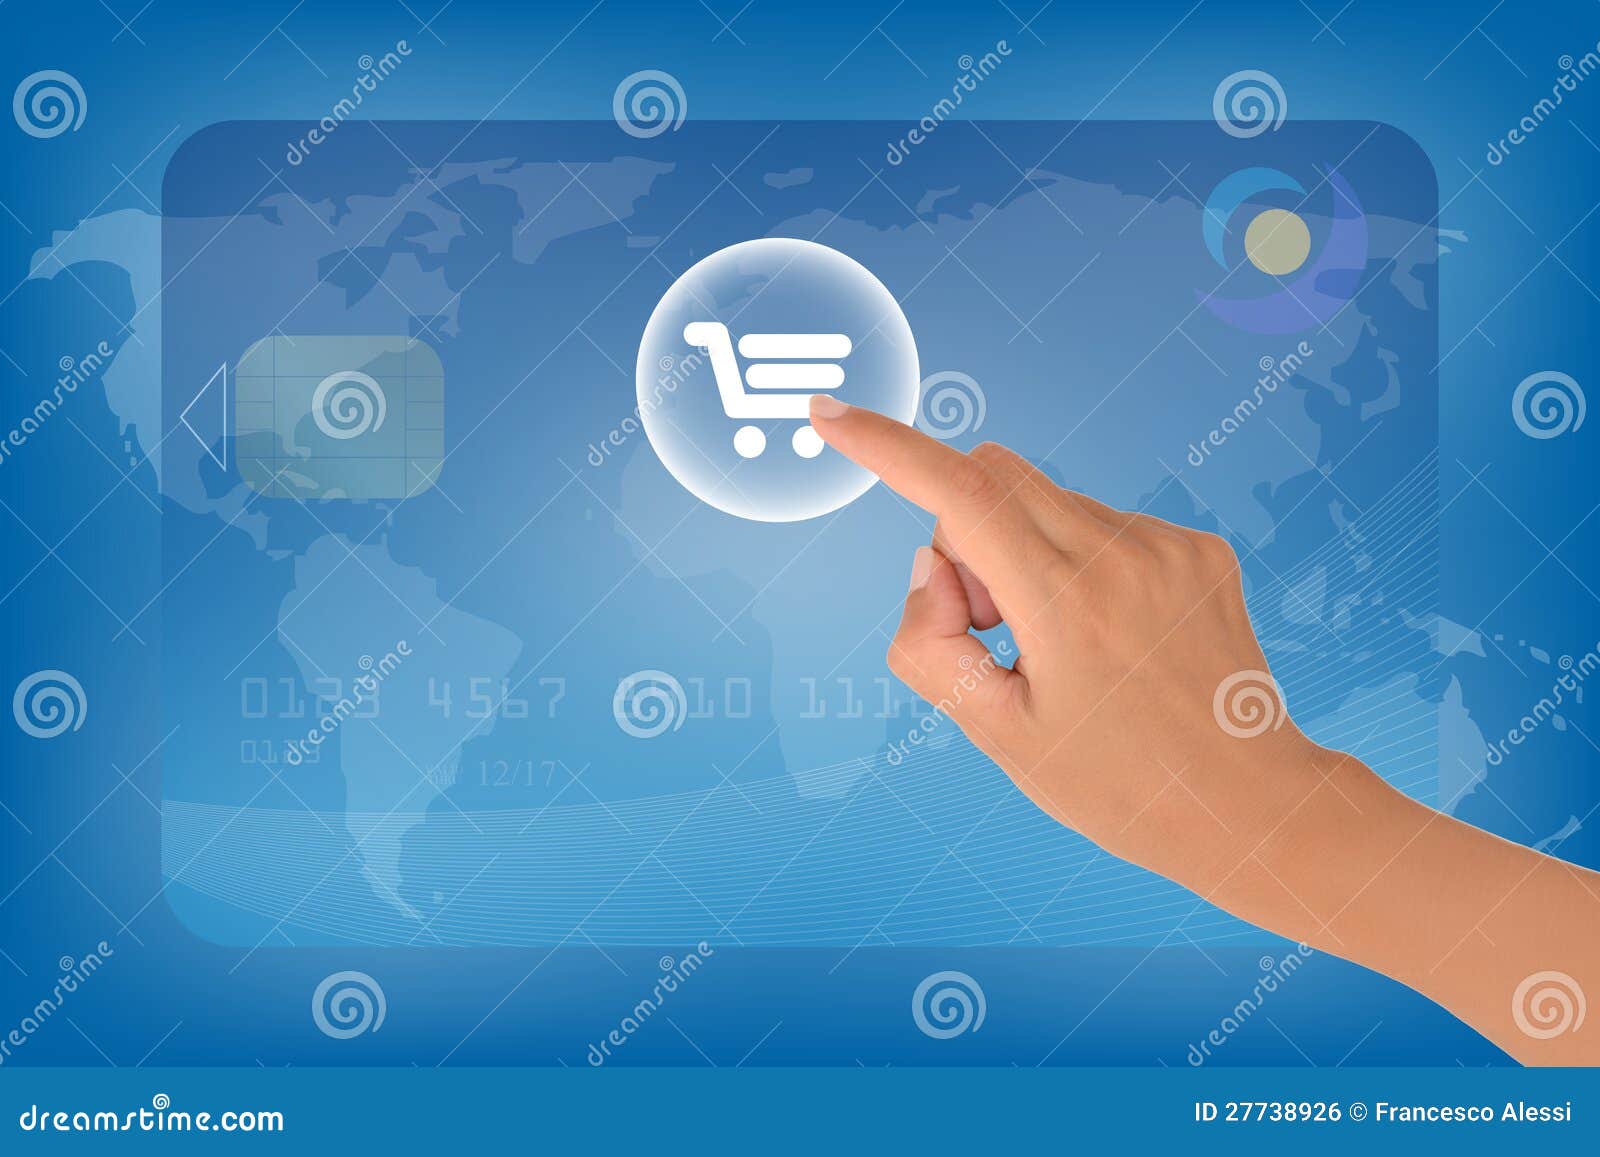 Ηλεκτρονικό εμπόριο. Έννοια ηλεκτρονικού εμπορίου με ένα θηλυκό χέρι που χτυπά στο κουμπί διαγραμμάτων.